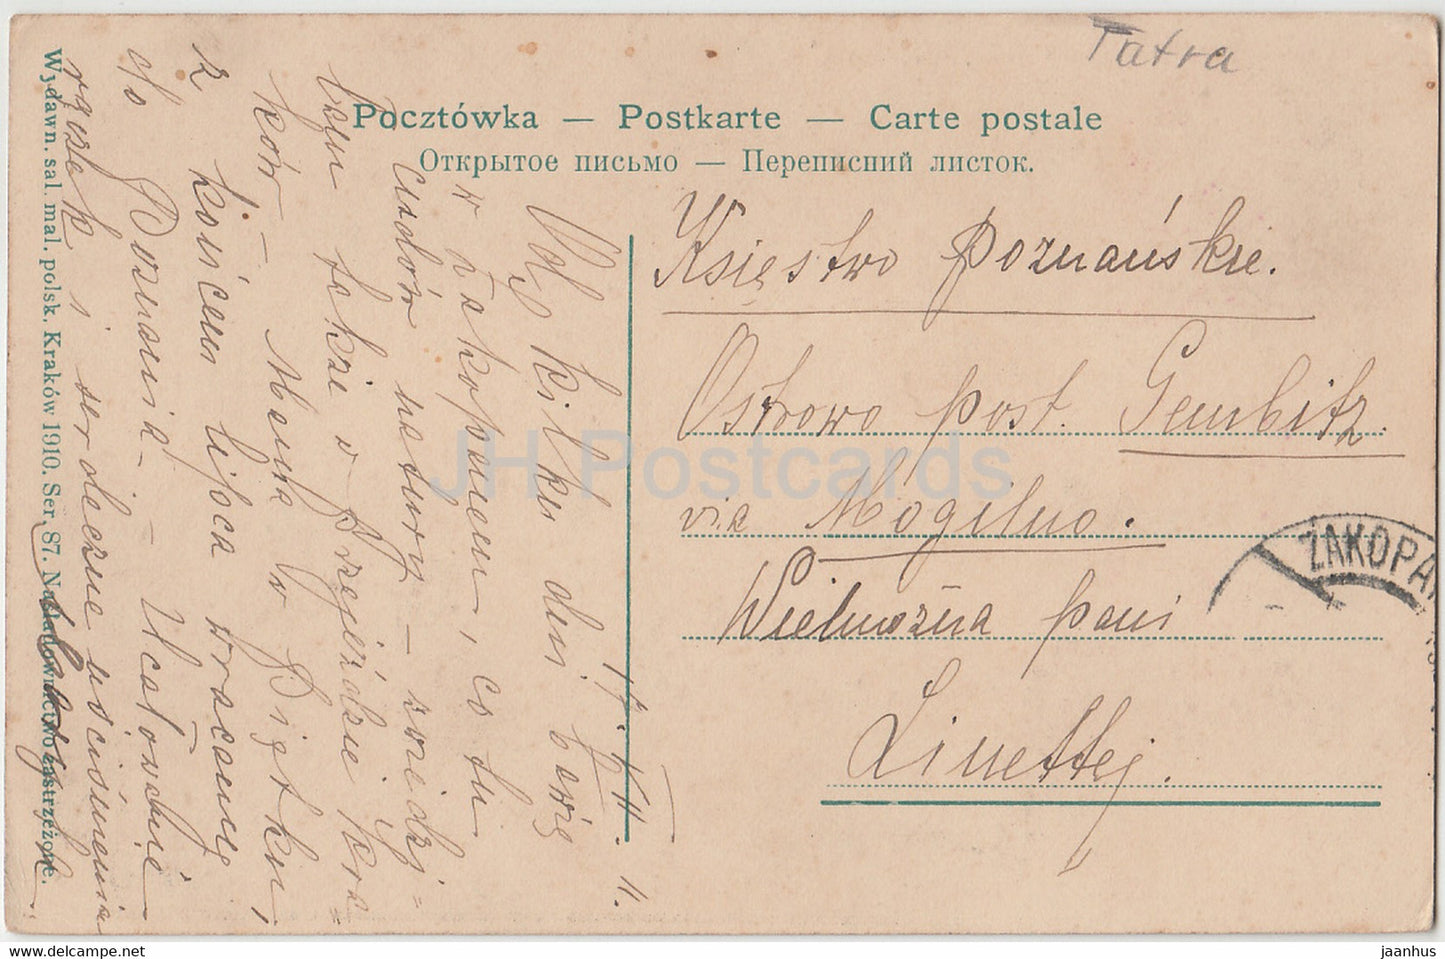 Tatry - Kuznica ze szczytu Nosala - 87 - alte Postkarte - 1910 - Polen - gebraucht